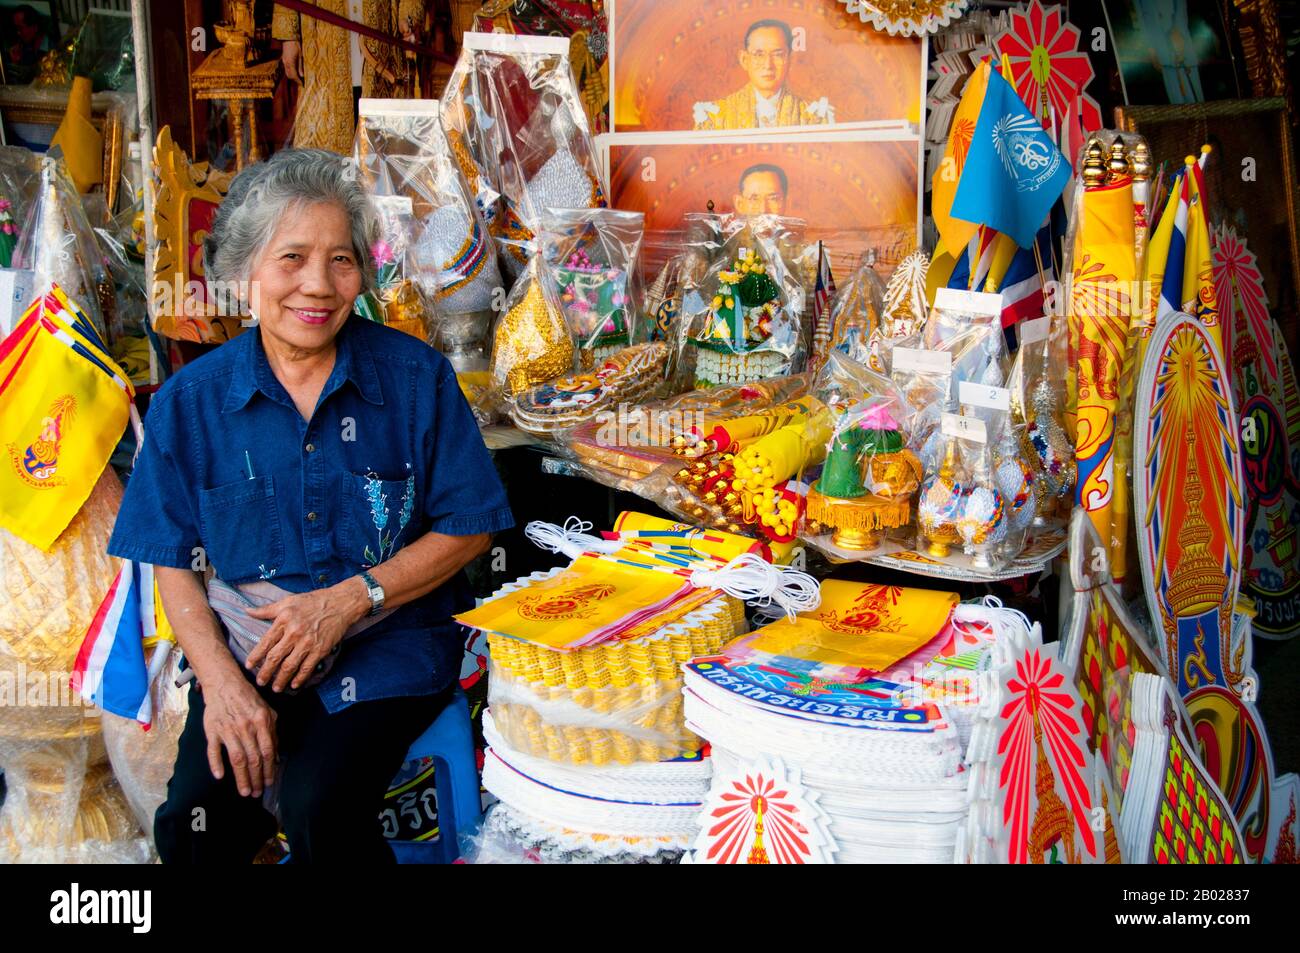 Thailand: Eine thailändische Frau verkauft königliche Gegenstände, einschließlich gelber königlicher Flaggen für König Bhumibol (Rama IX) in Banglamphu, Bangkok. Bhumibol Adulyadej (Phumiphon Adunyadet; 5. Dezember 1927 - 13. Oktober 2016) war der König von Thailand. Er war bekannt als Rama IX (und innerhalb der thailändischen Königsfamilie und enger Partner einfach als Lek. Seit dem 9. Juni 1946 regierte er als der längste regierende Monarch der thailändischen Geschichte. Stockfoto